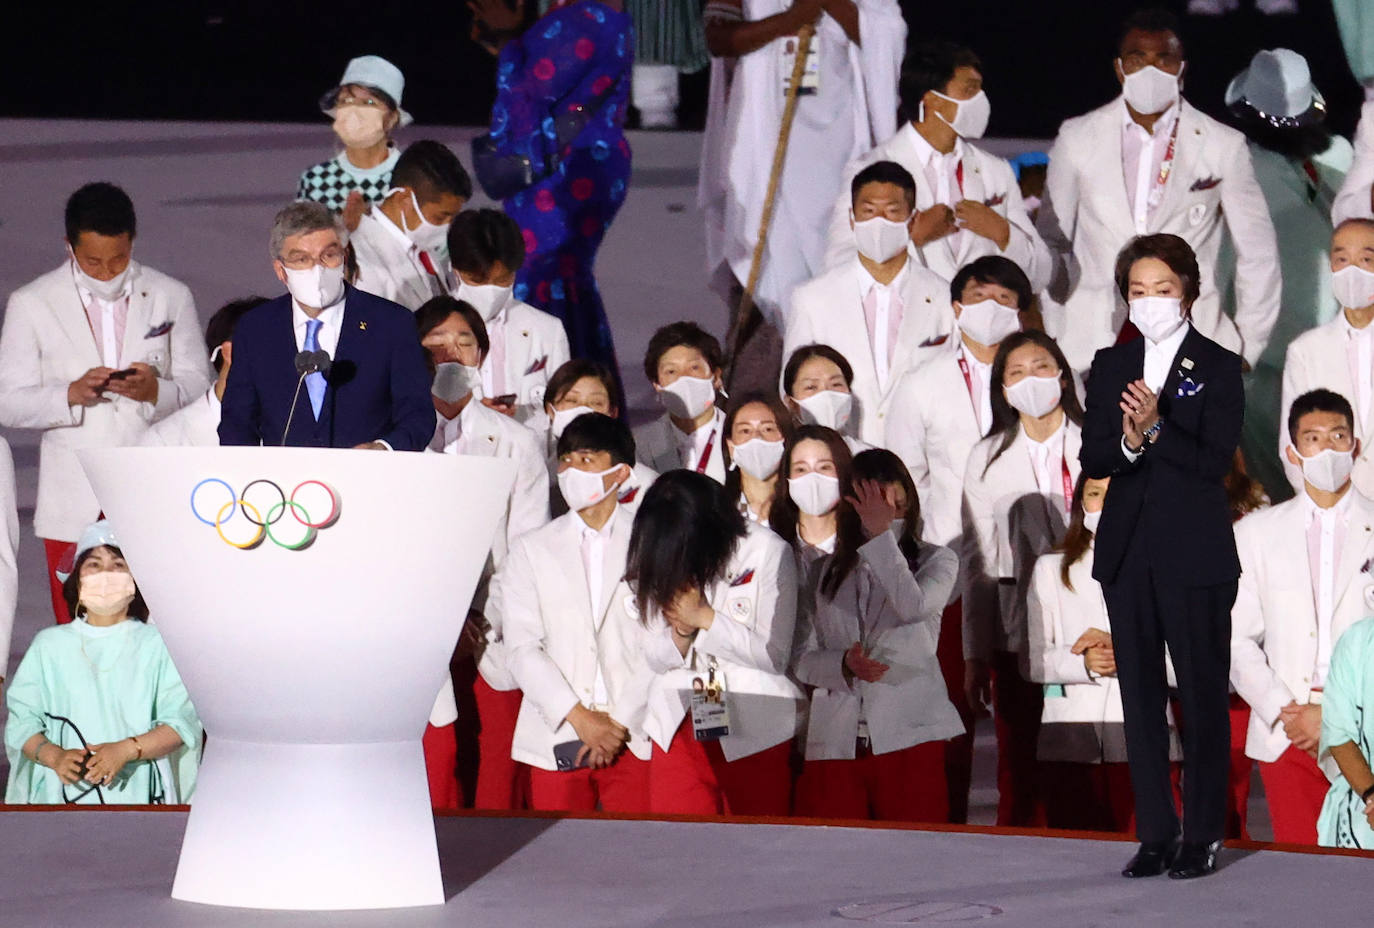 El presidente del Comité Olímpico Internacional (COI), Thomas Bach, interviene durante la ceremonia de inauguración.